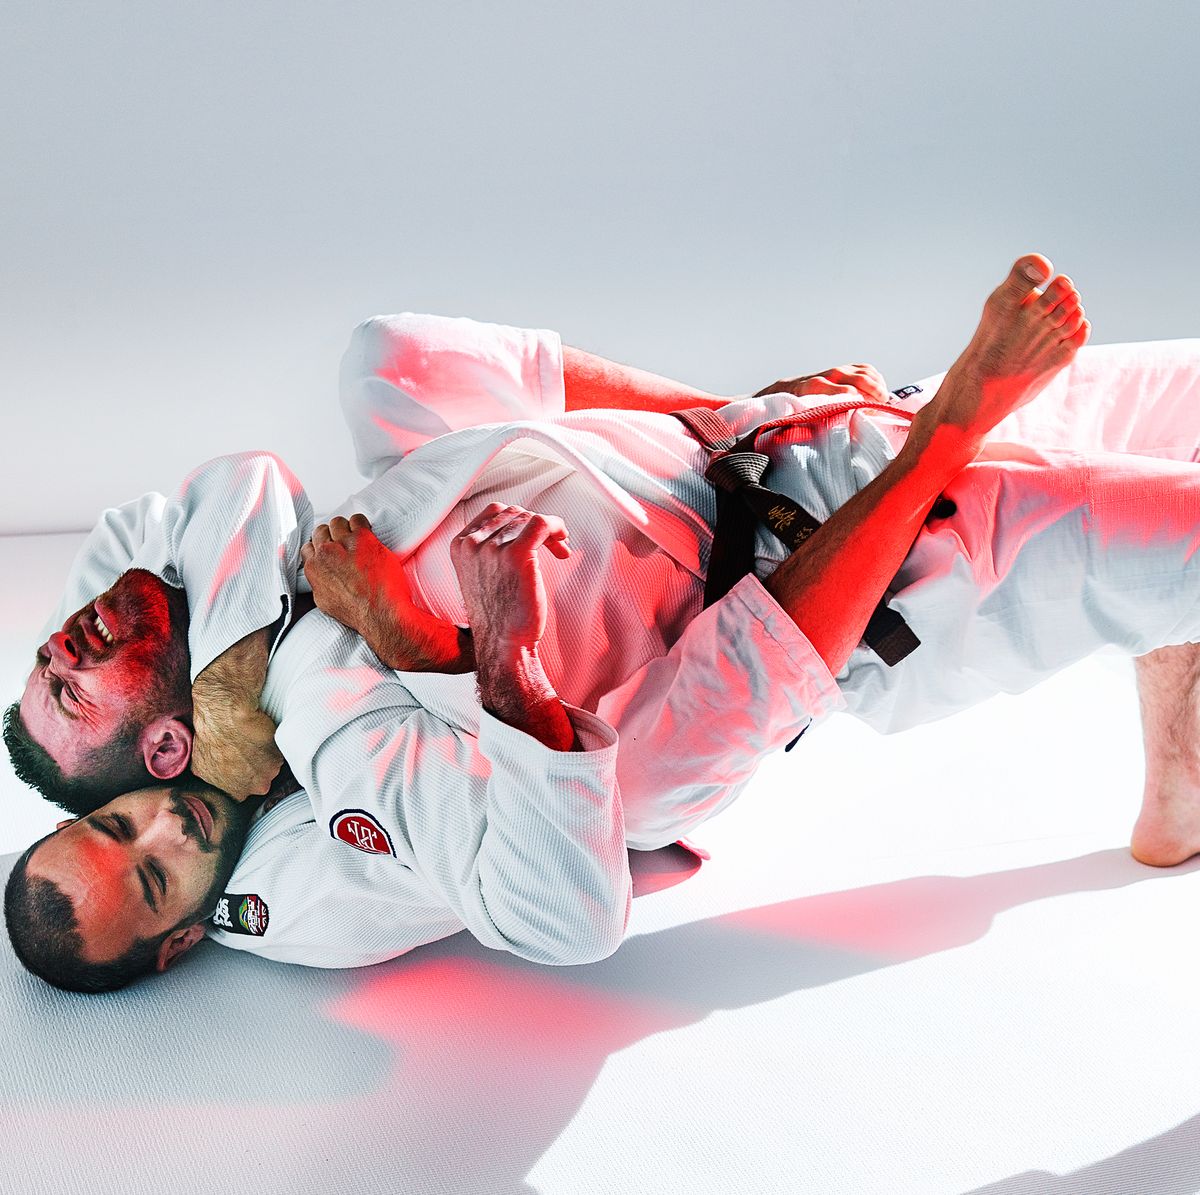 11 Facts About Jiu-Jitsu World Championship 